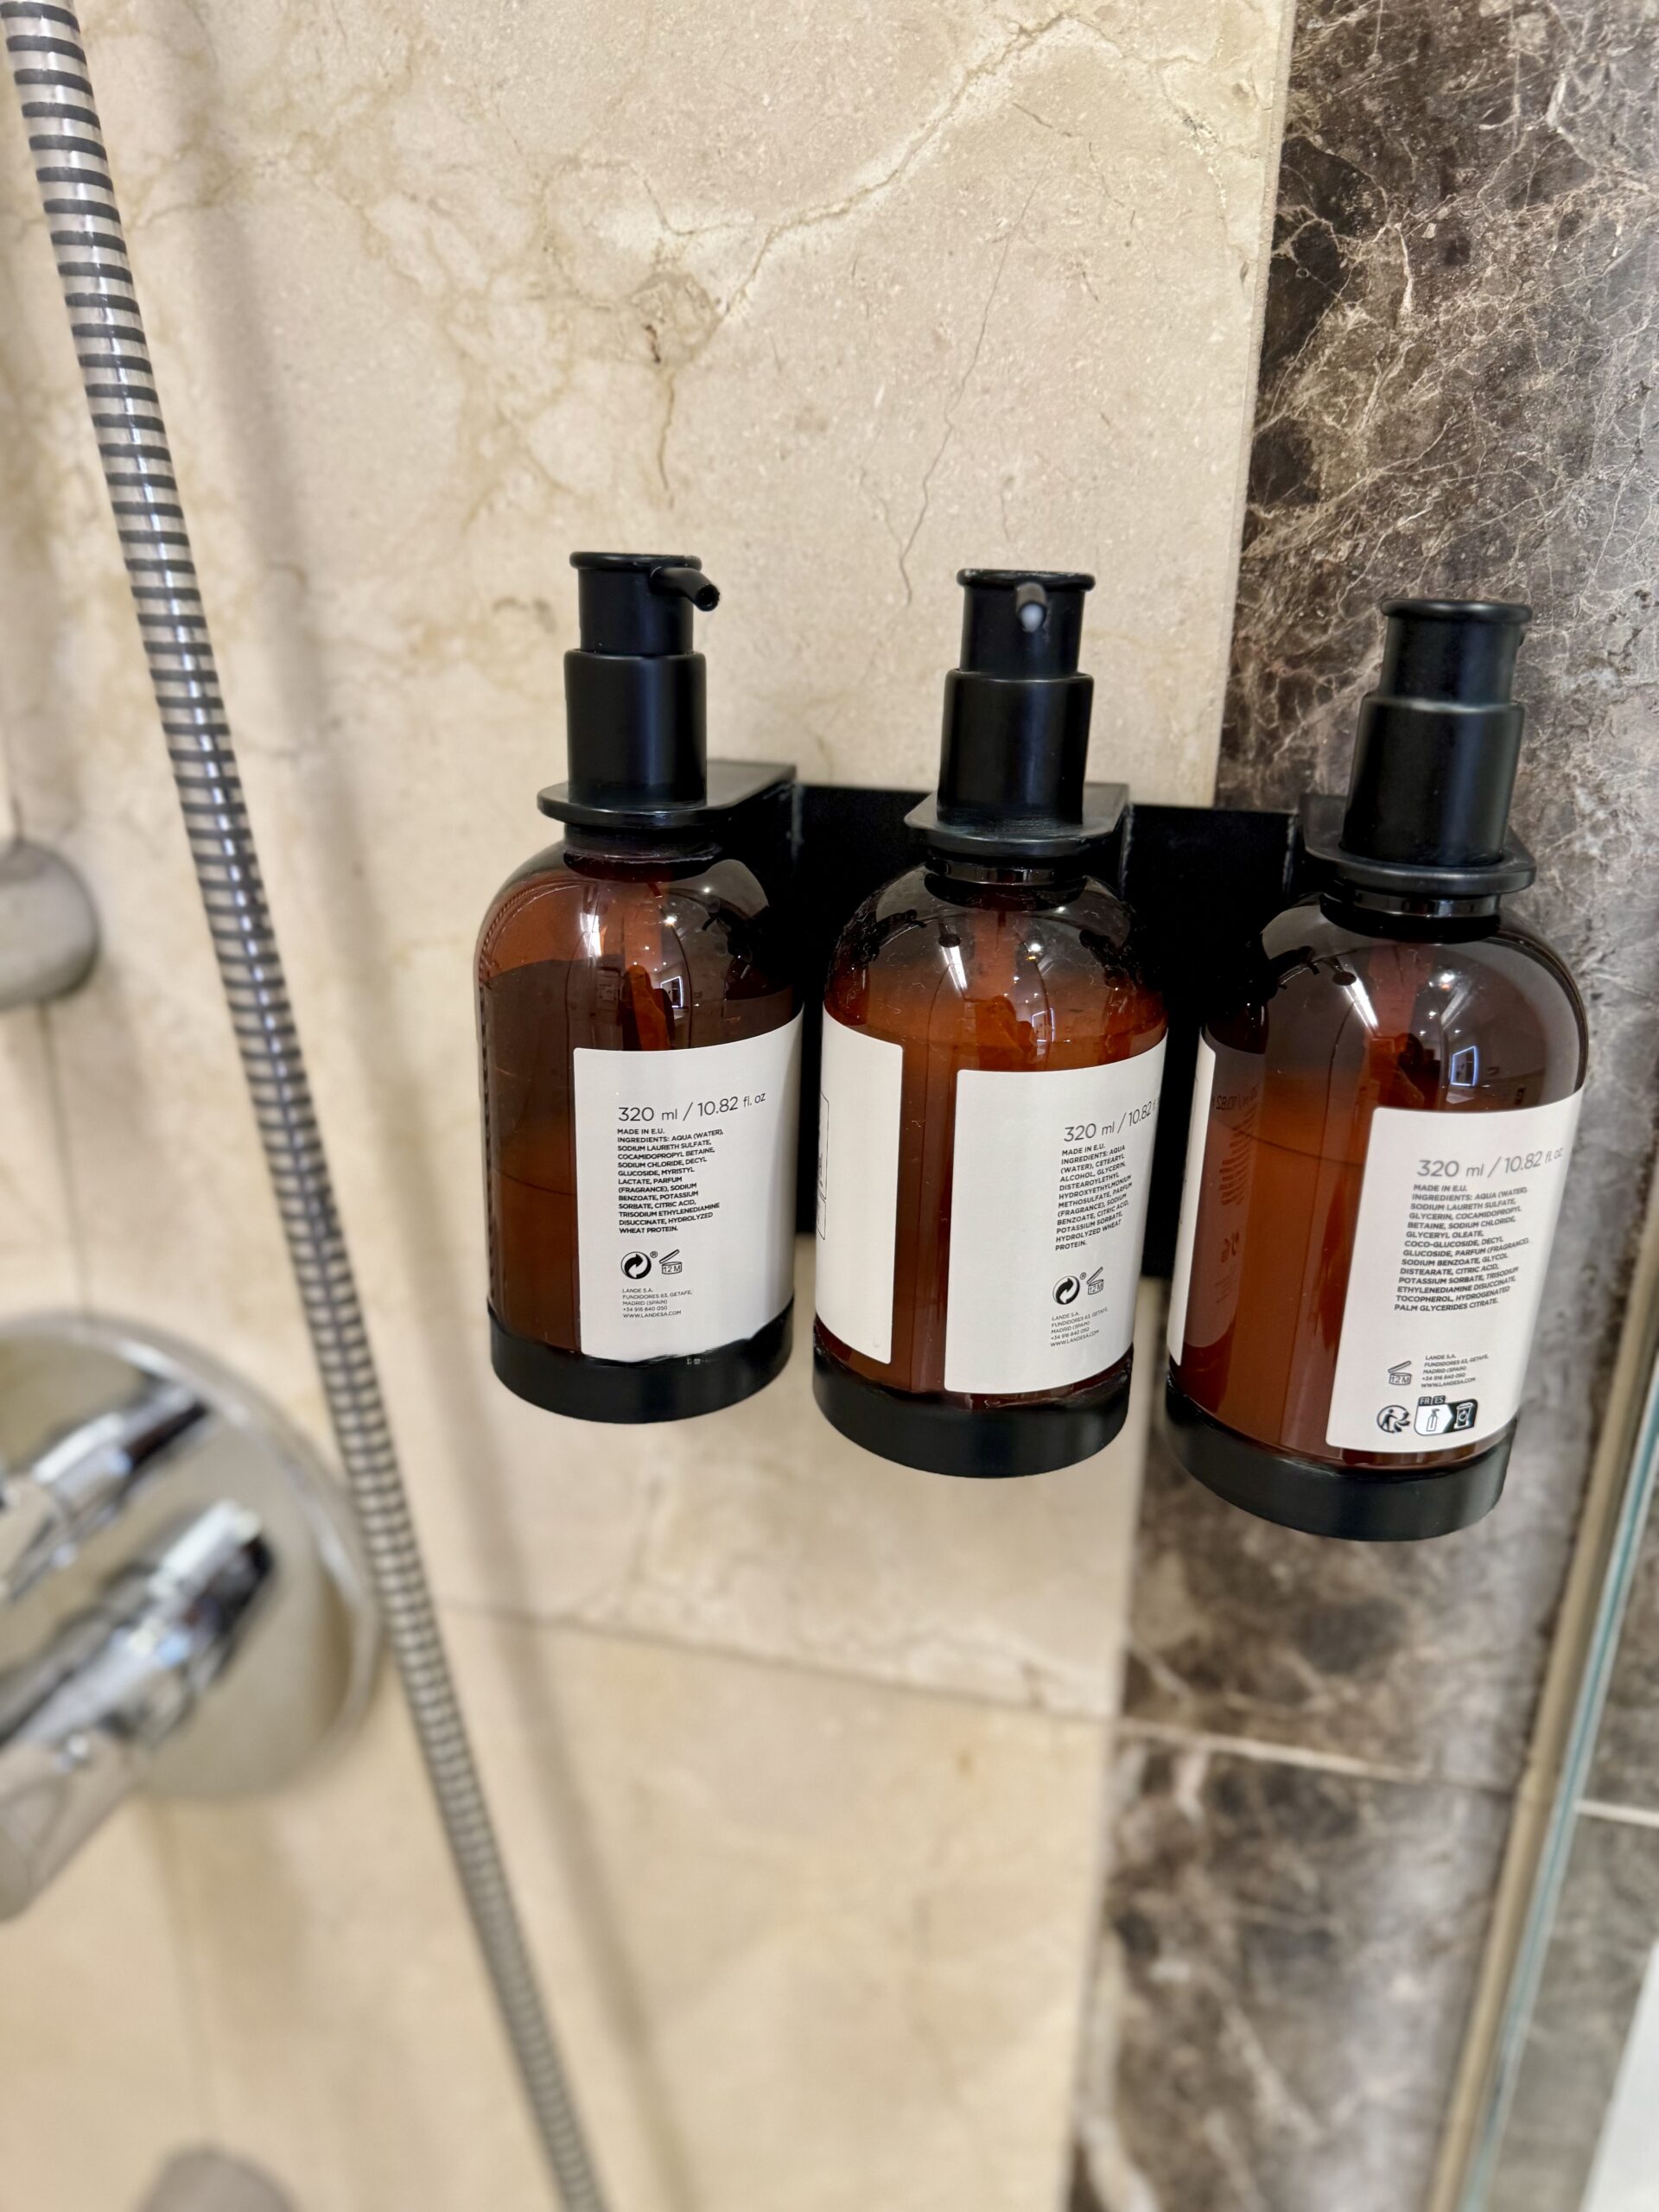 Soaps in hotel shower in Berlin